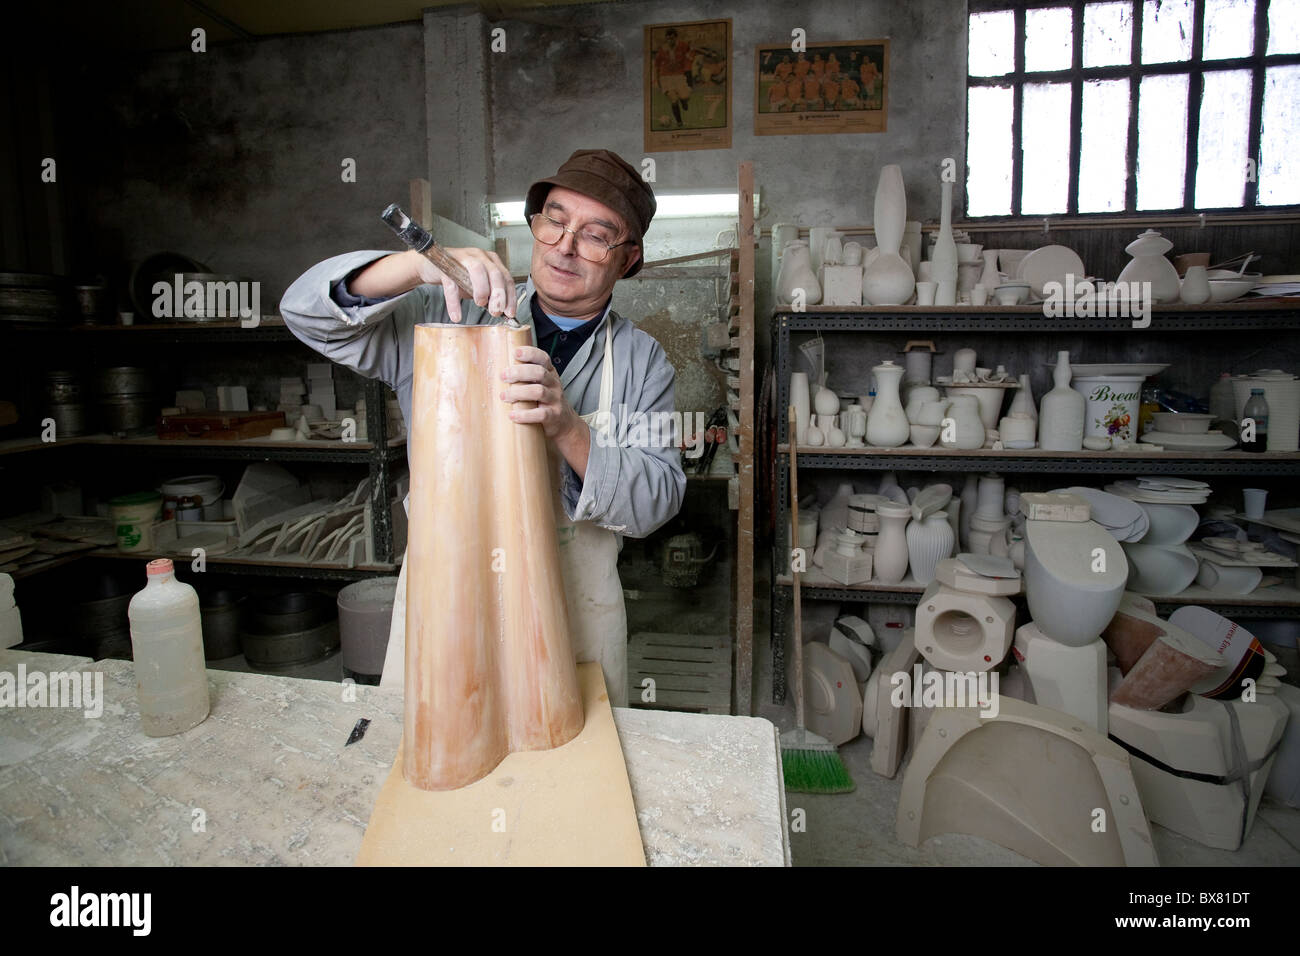 Faria & bento in gres porcellanato e ceramica flameware stabilimento situato nella città di Aljubarrota, Portogallo.Foto:Jeff Gilbert Foto Stock